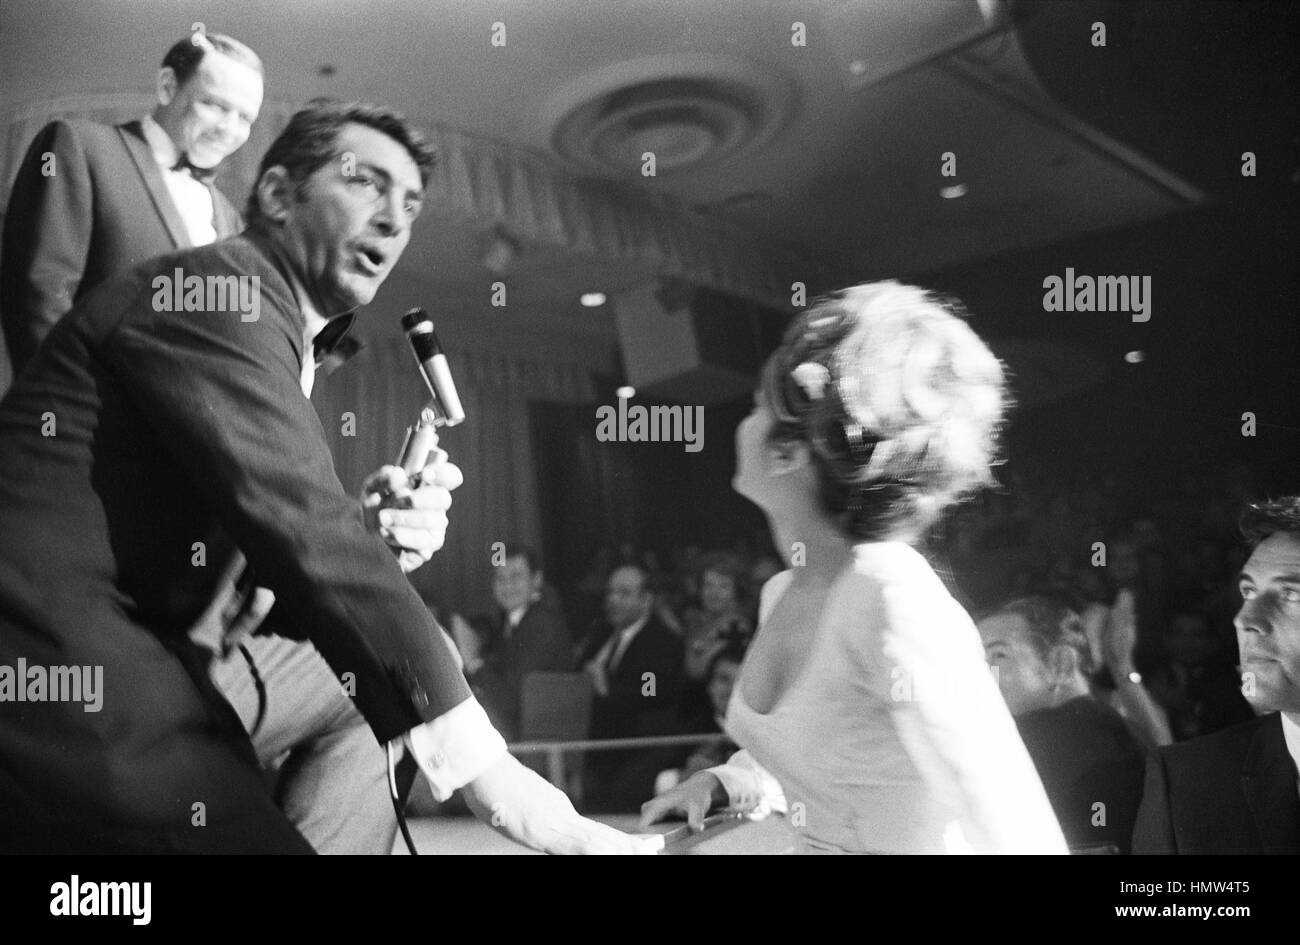 Nancy Sinatra, en la audiencia, es saludo por Dean Martin y su padre Frank Sinatra, que están en la etapa de realizar. La escena tuvo lugar en abril de 1966, en Las Vegas. Foto de stock